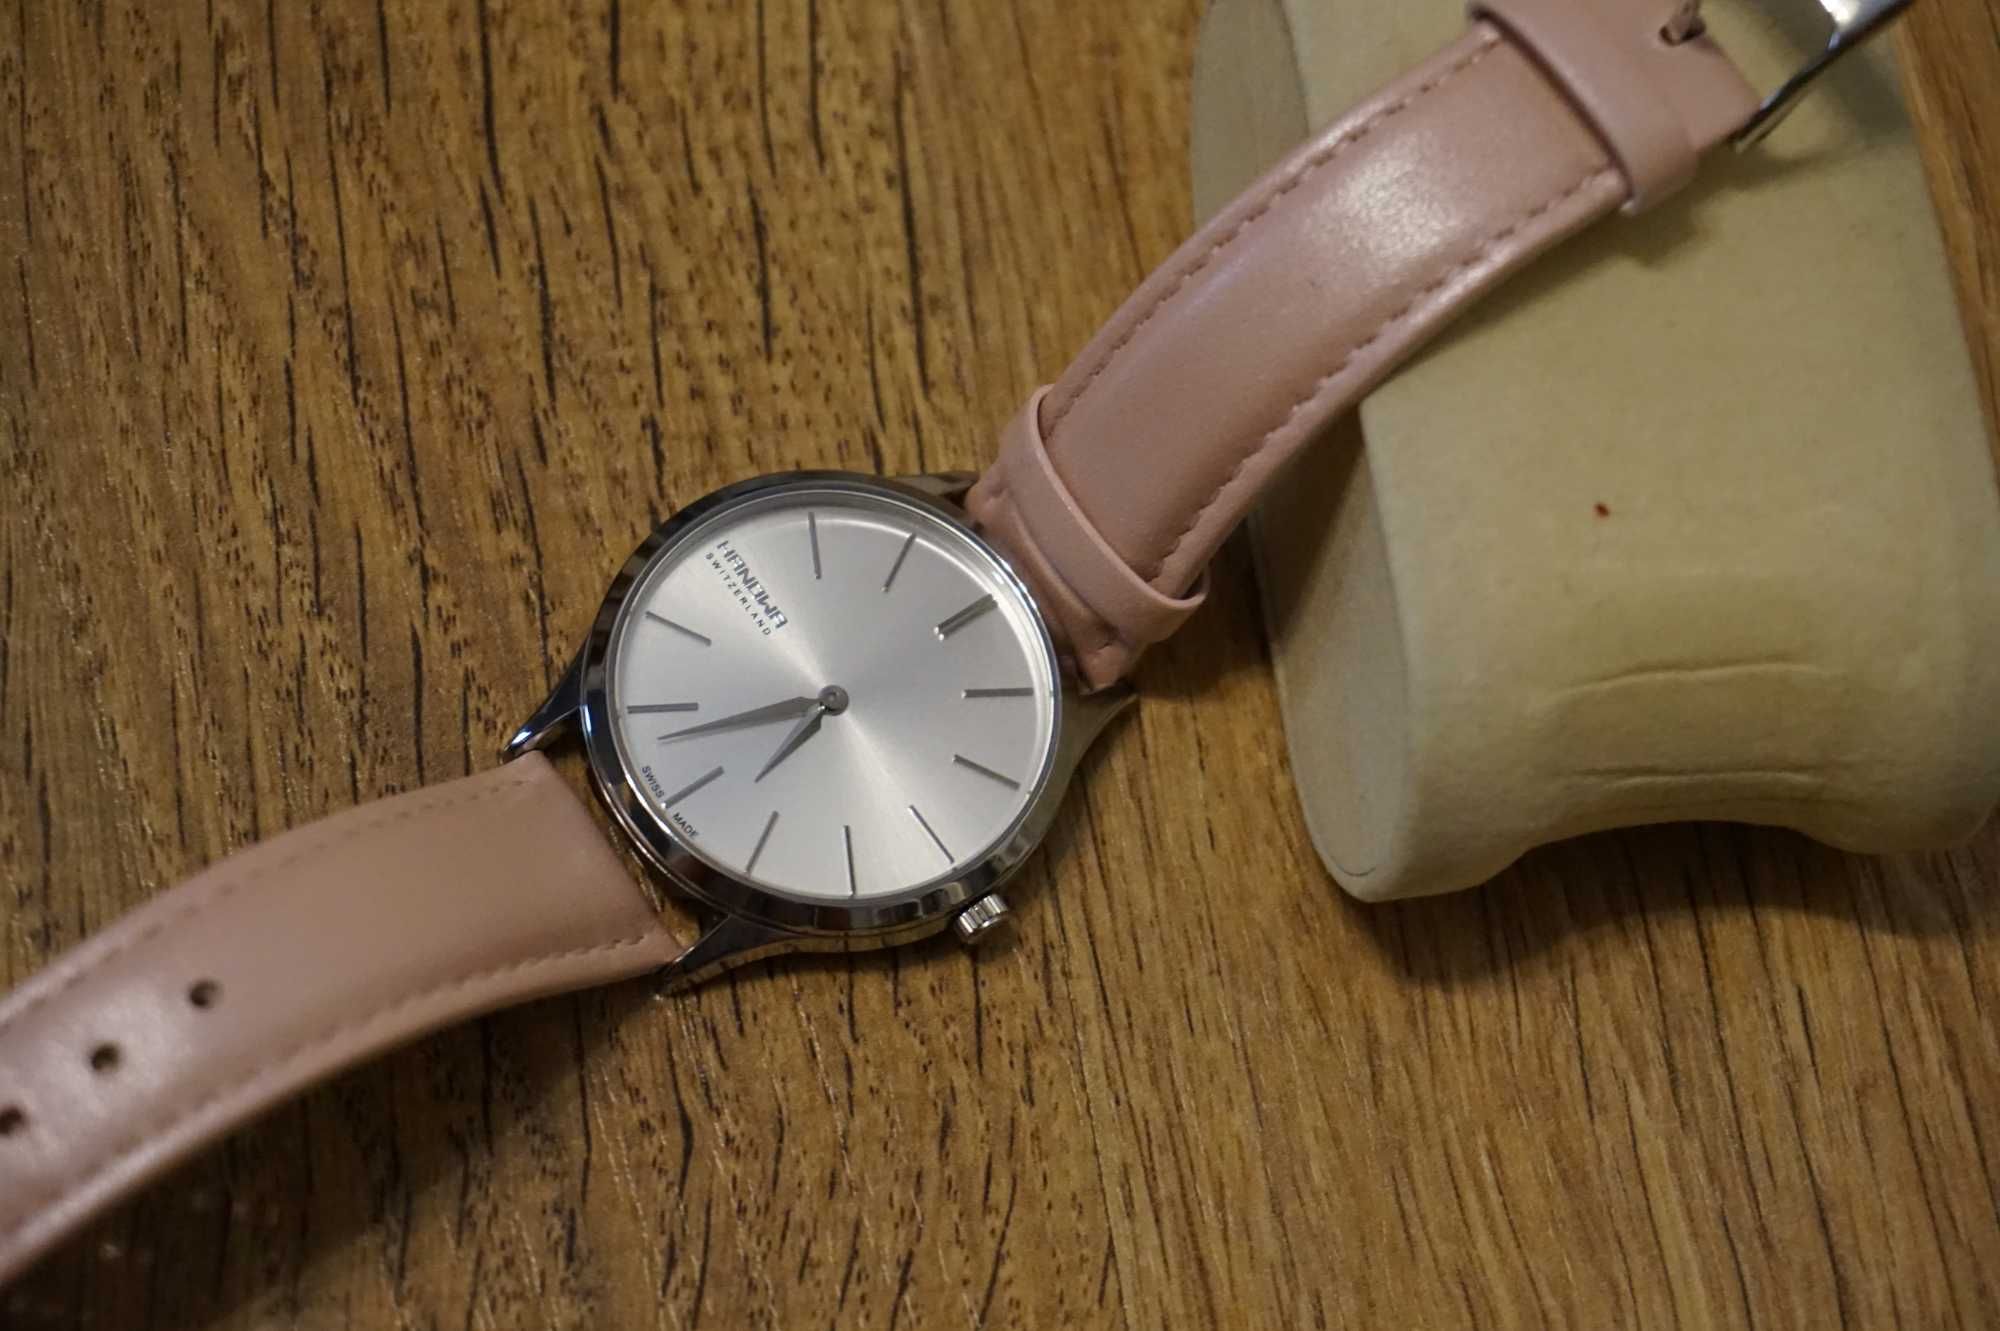 Damski zegarek Hanowa 16-6075, Swiss Made, stan idealny